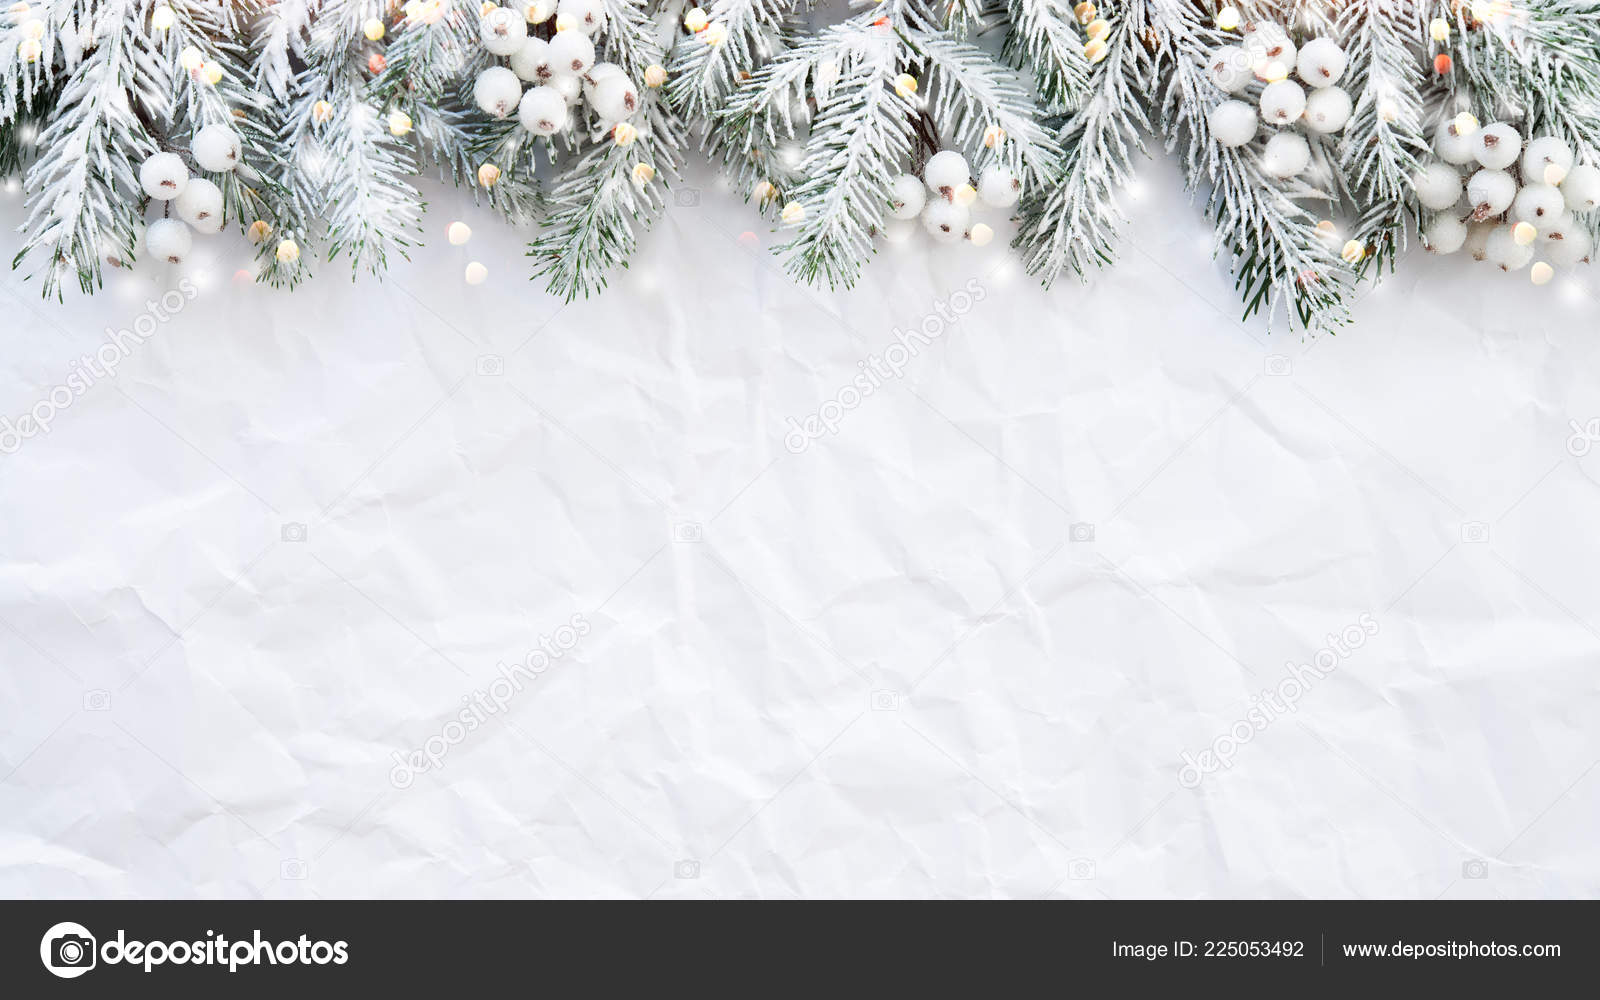 Trong không gian lễ hội, Nền Giáng Sinh với cây thông trắng trên nền nhăn là một sự lựa chọn lý tưởng để tạo ra một không gian ấm áp và đầy sức sống. Hình ảnh này có thể khiến bạn cảm thấy dễ chịu, giúp bạn nghĩ về những kỷ niệm đáng nhớ và mang lại niềm vui cho các em nhỏ.